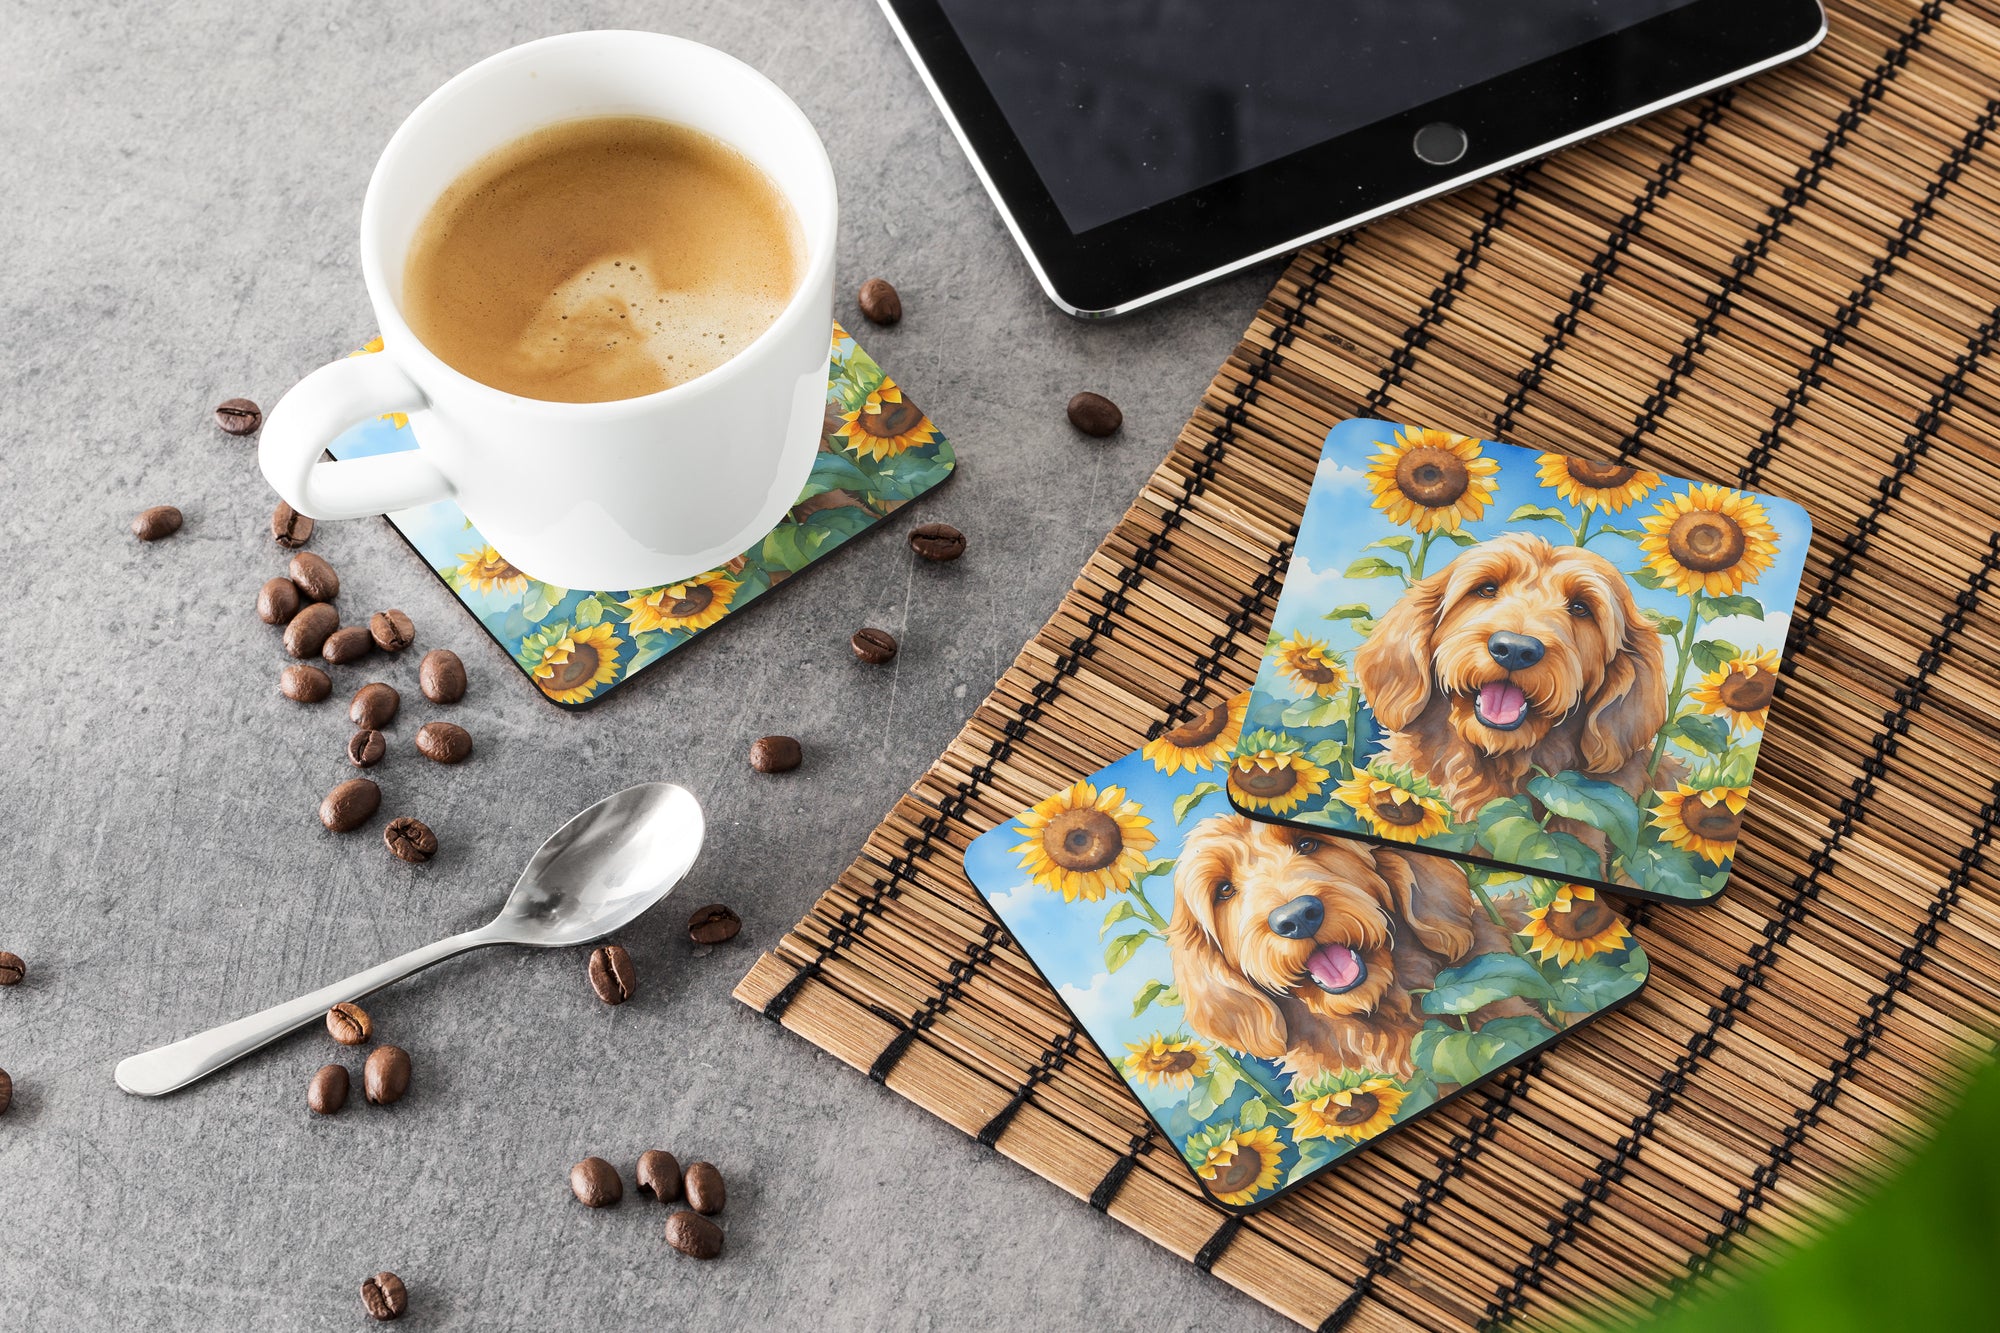 Otterhound in Sunflowers Foam Coasters